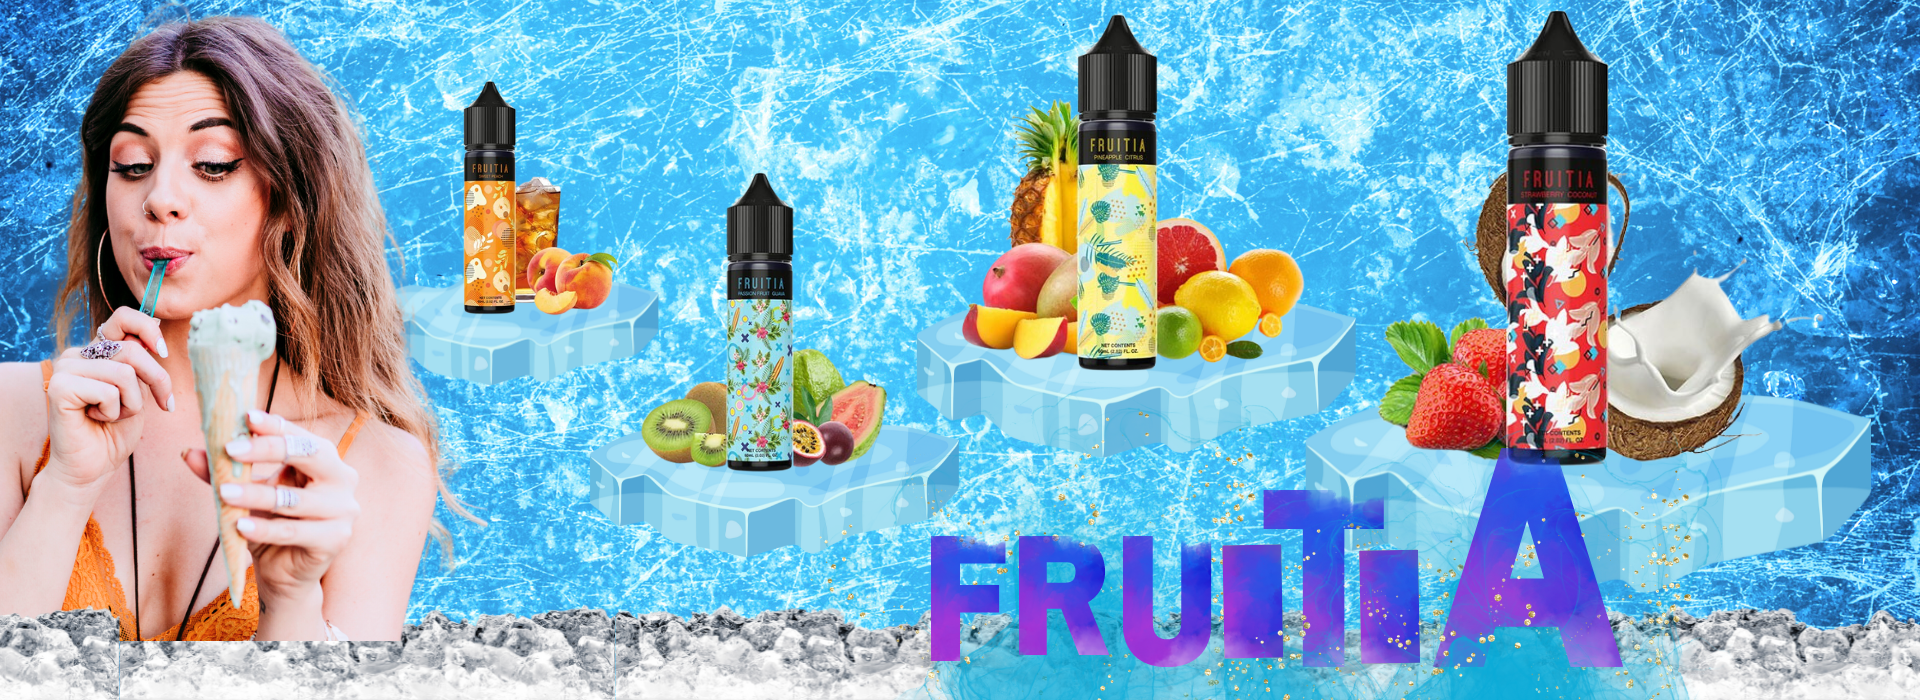 Nuova linea fruitia liquidi scomposti sigaretta elettronica Nuova linea fruitia liquidi scomposti Progetto senza titolo 1